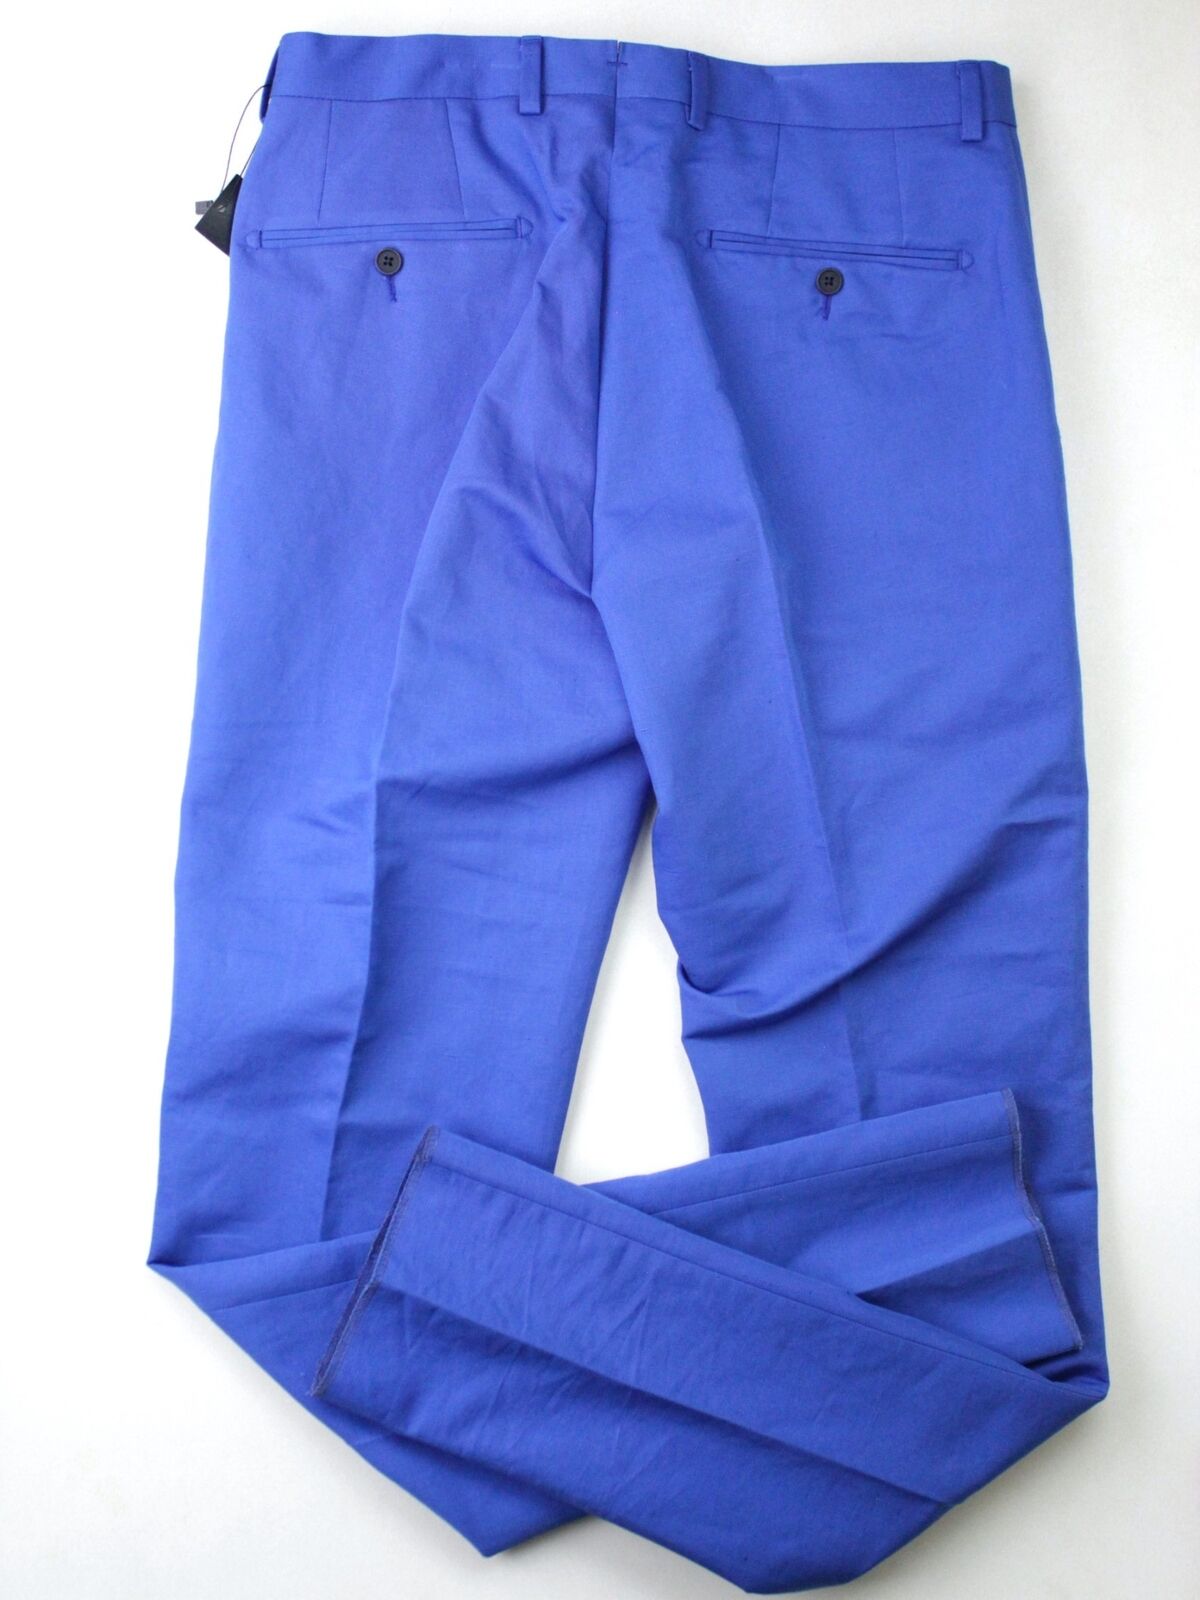 Mens Store Bloomingdales Cotton Linen Slim Fit Size 36 Dress Pants Royal Blue